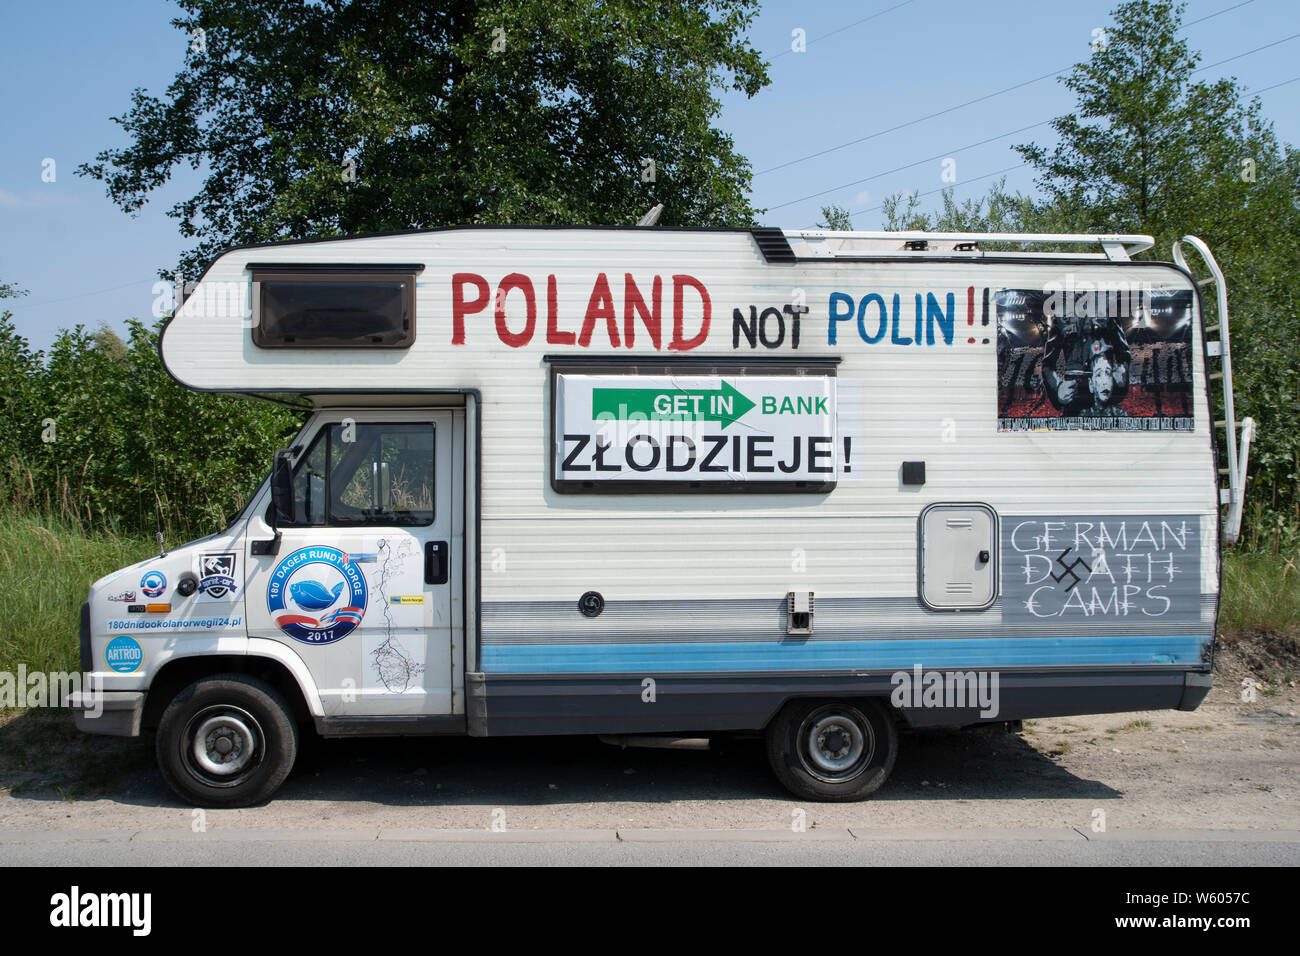 Protesta scritta su un camper auto presso una strada pubblica in Polonia. Foto Stock